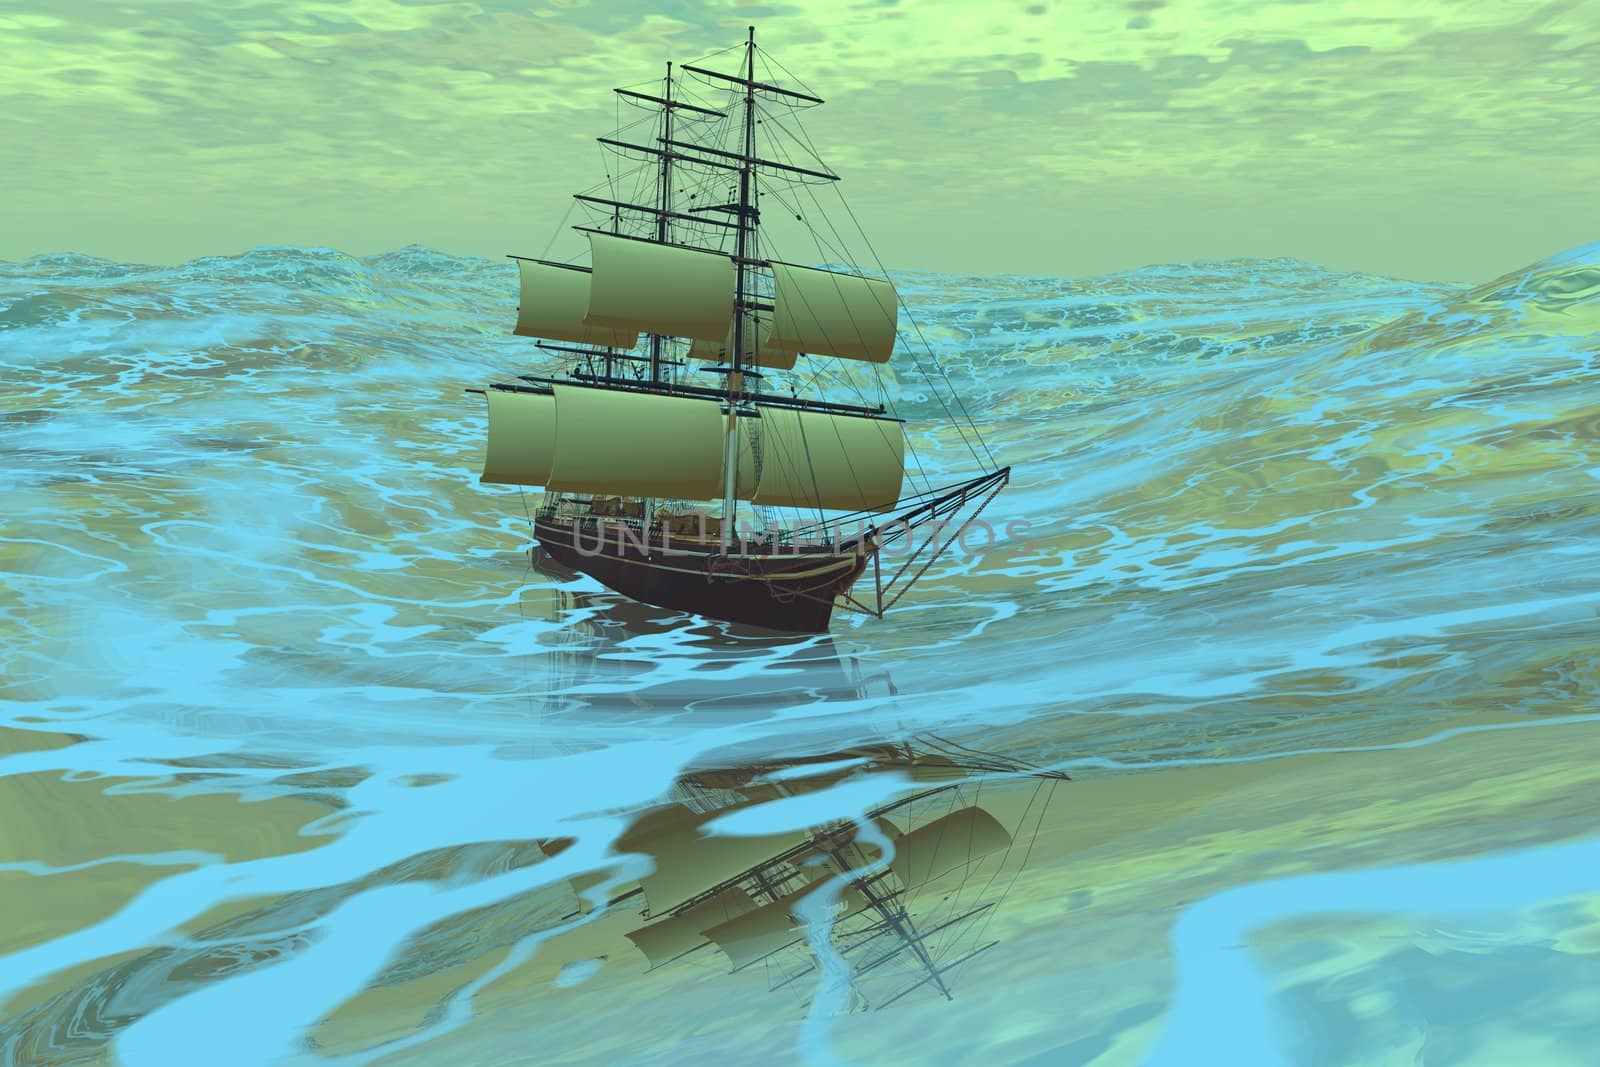 A ship sails in a rough ocean.